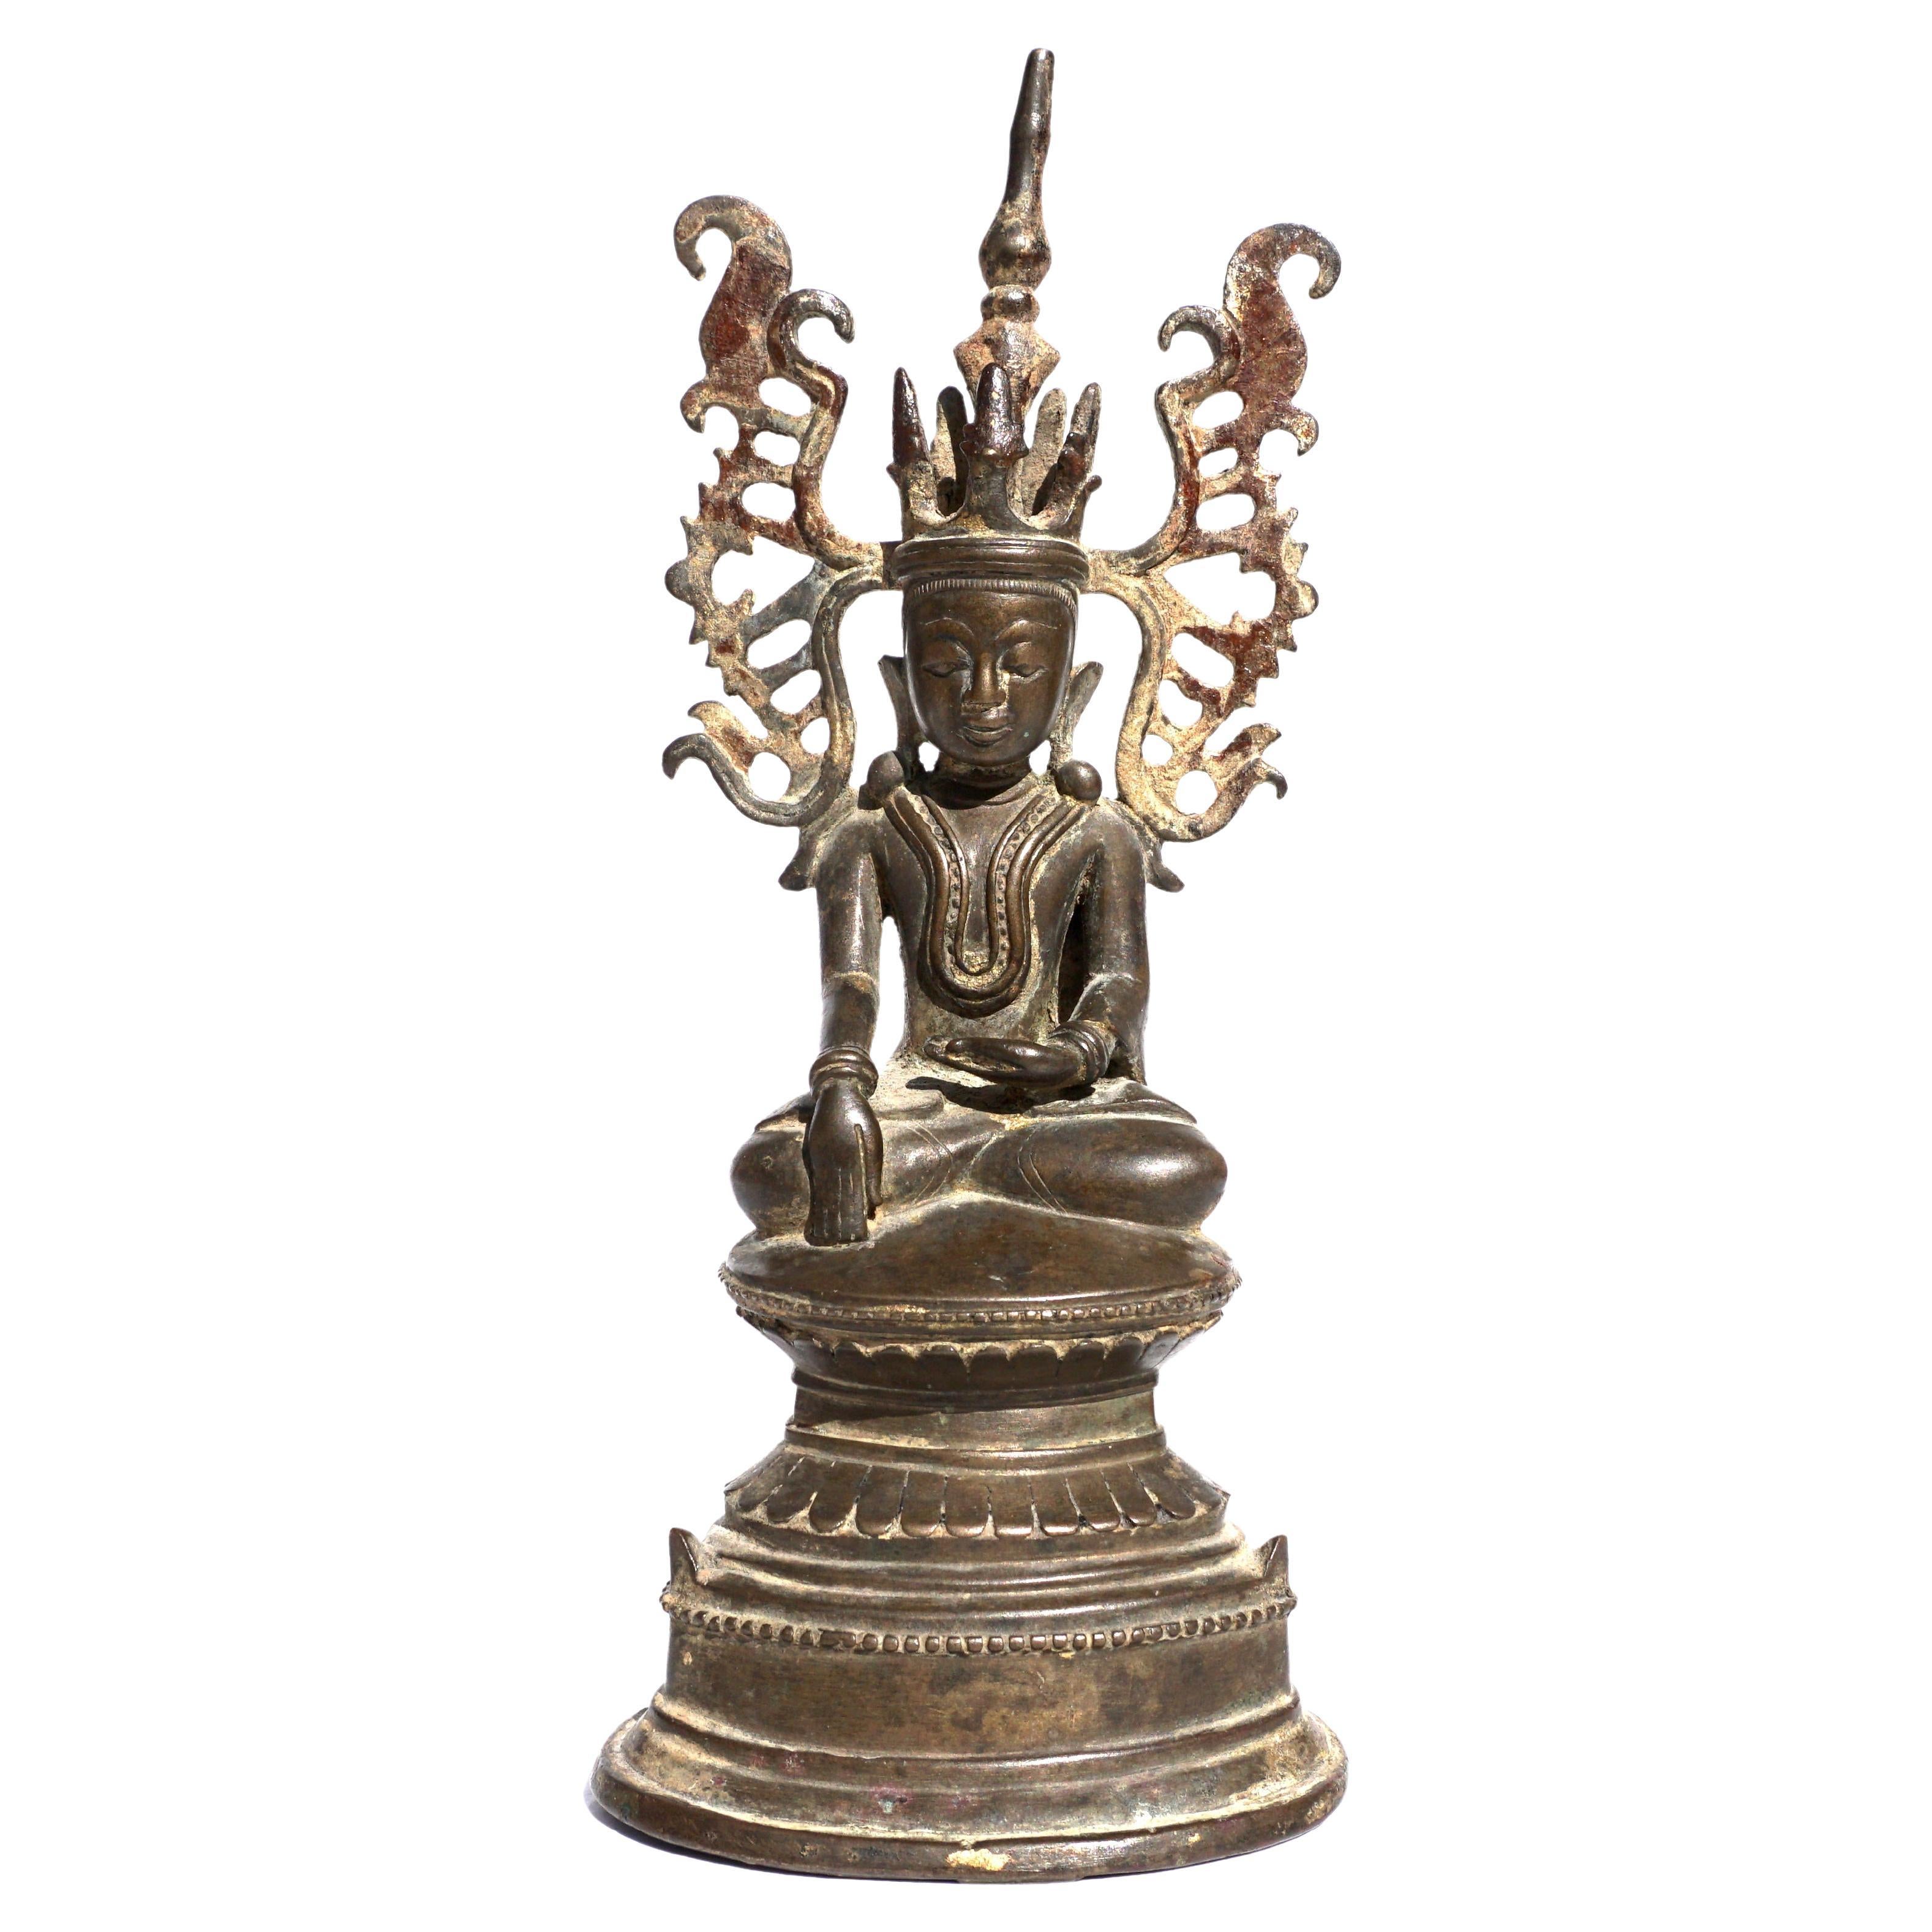 Bouddha assis en bronze thaïlandais du Sud-Est asiatique, vers le 17ème siècle